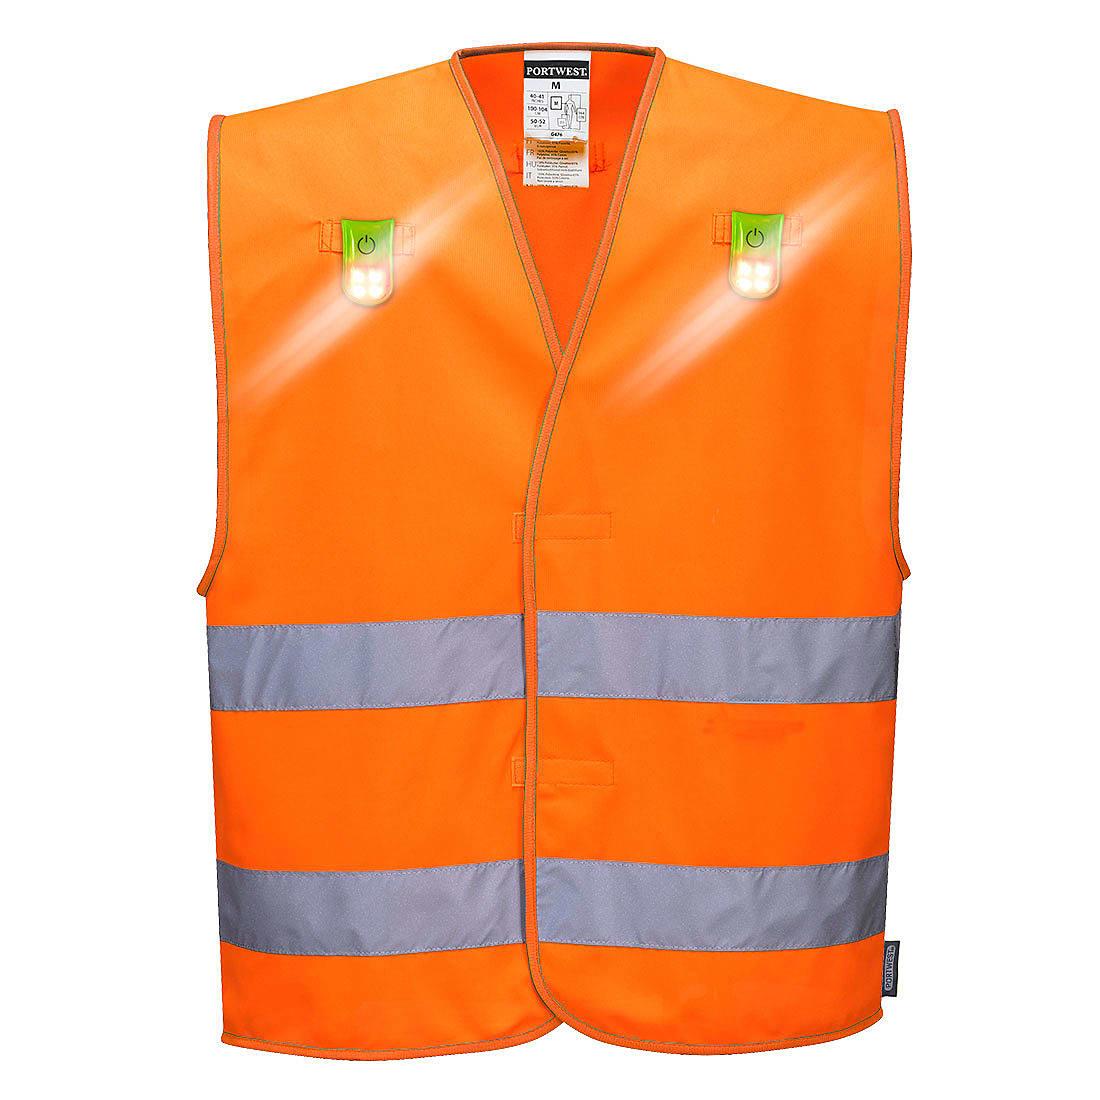 Portwest Hi-Viz Versatile Vest in Orange (Product Code: L474)